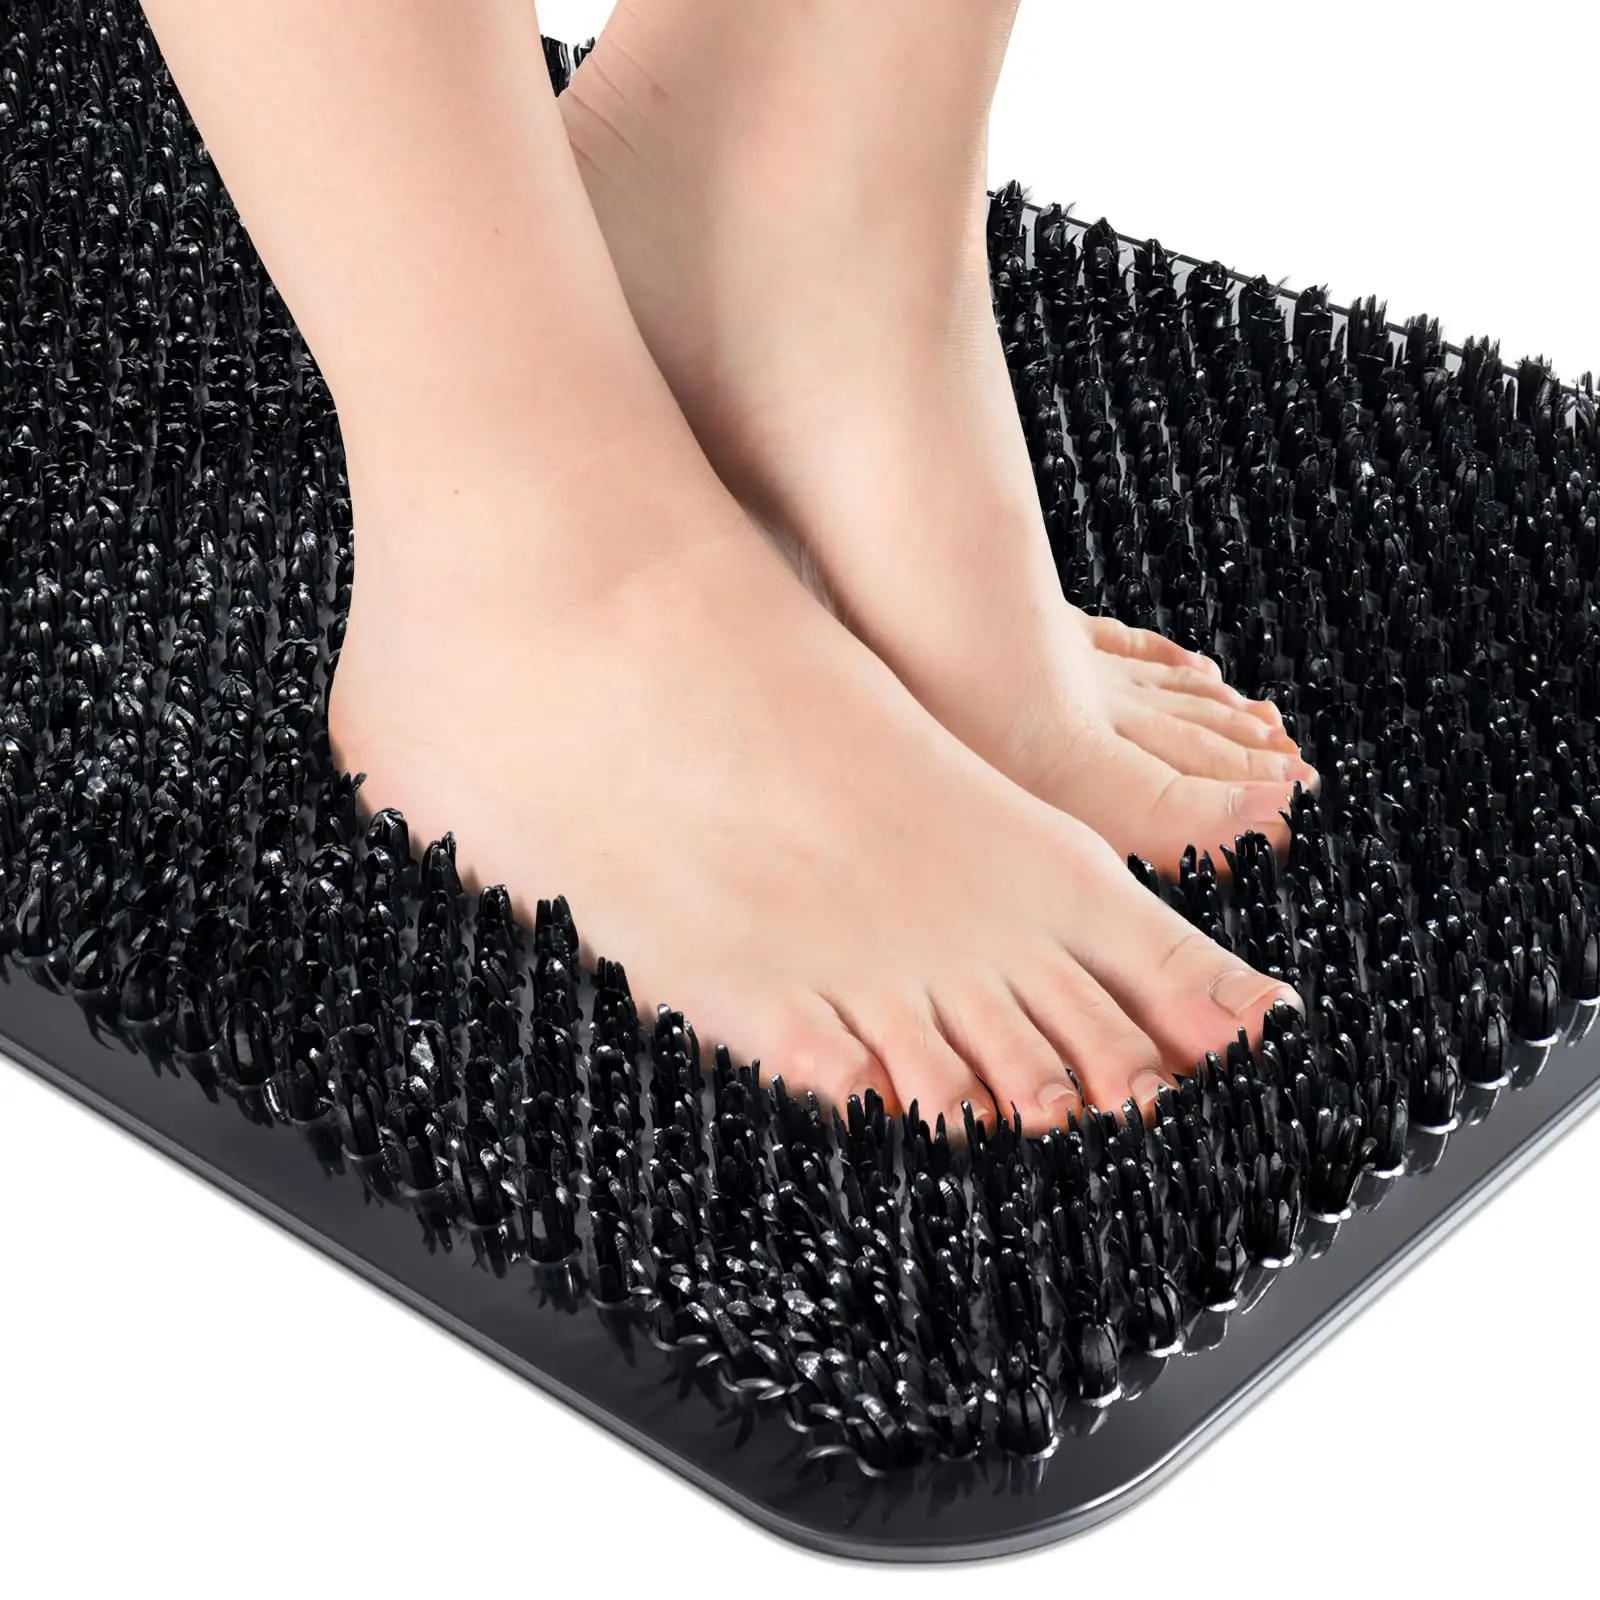 Non Slip Grass Bath Mat Quick Drain Shower Floor Mat with Soft Bristles for Scrubbing Foot Mat